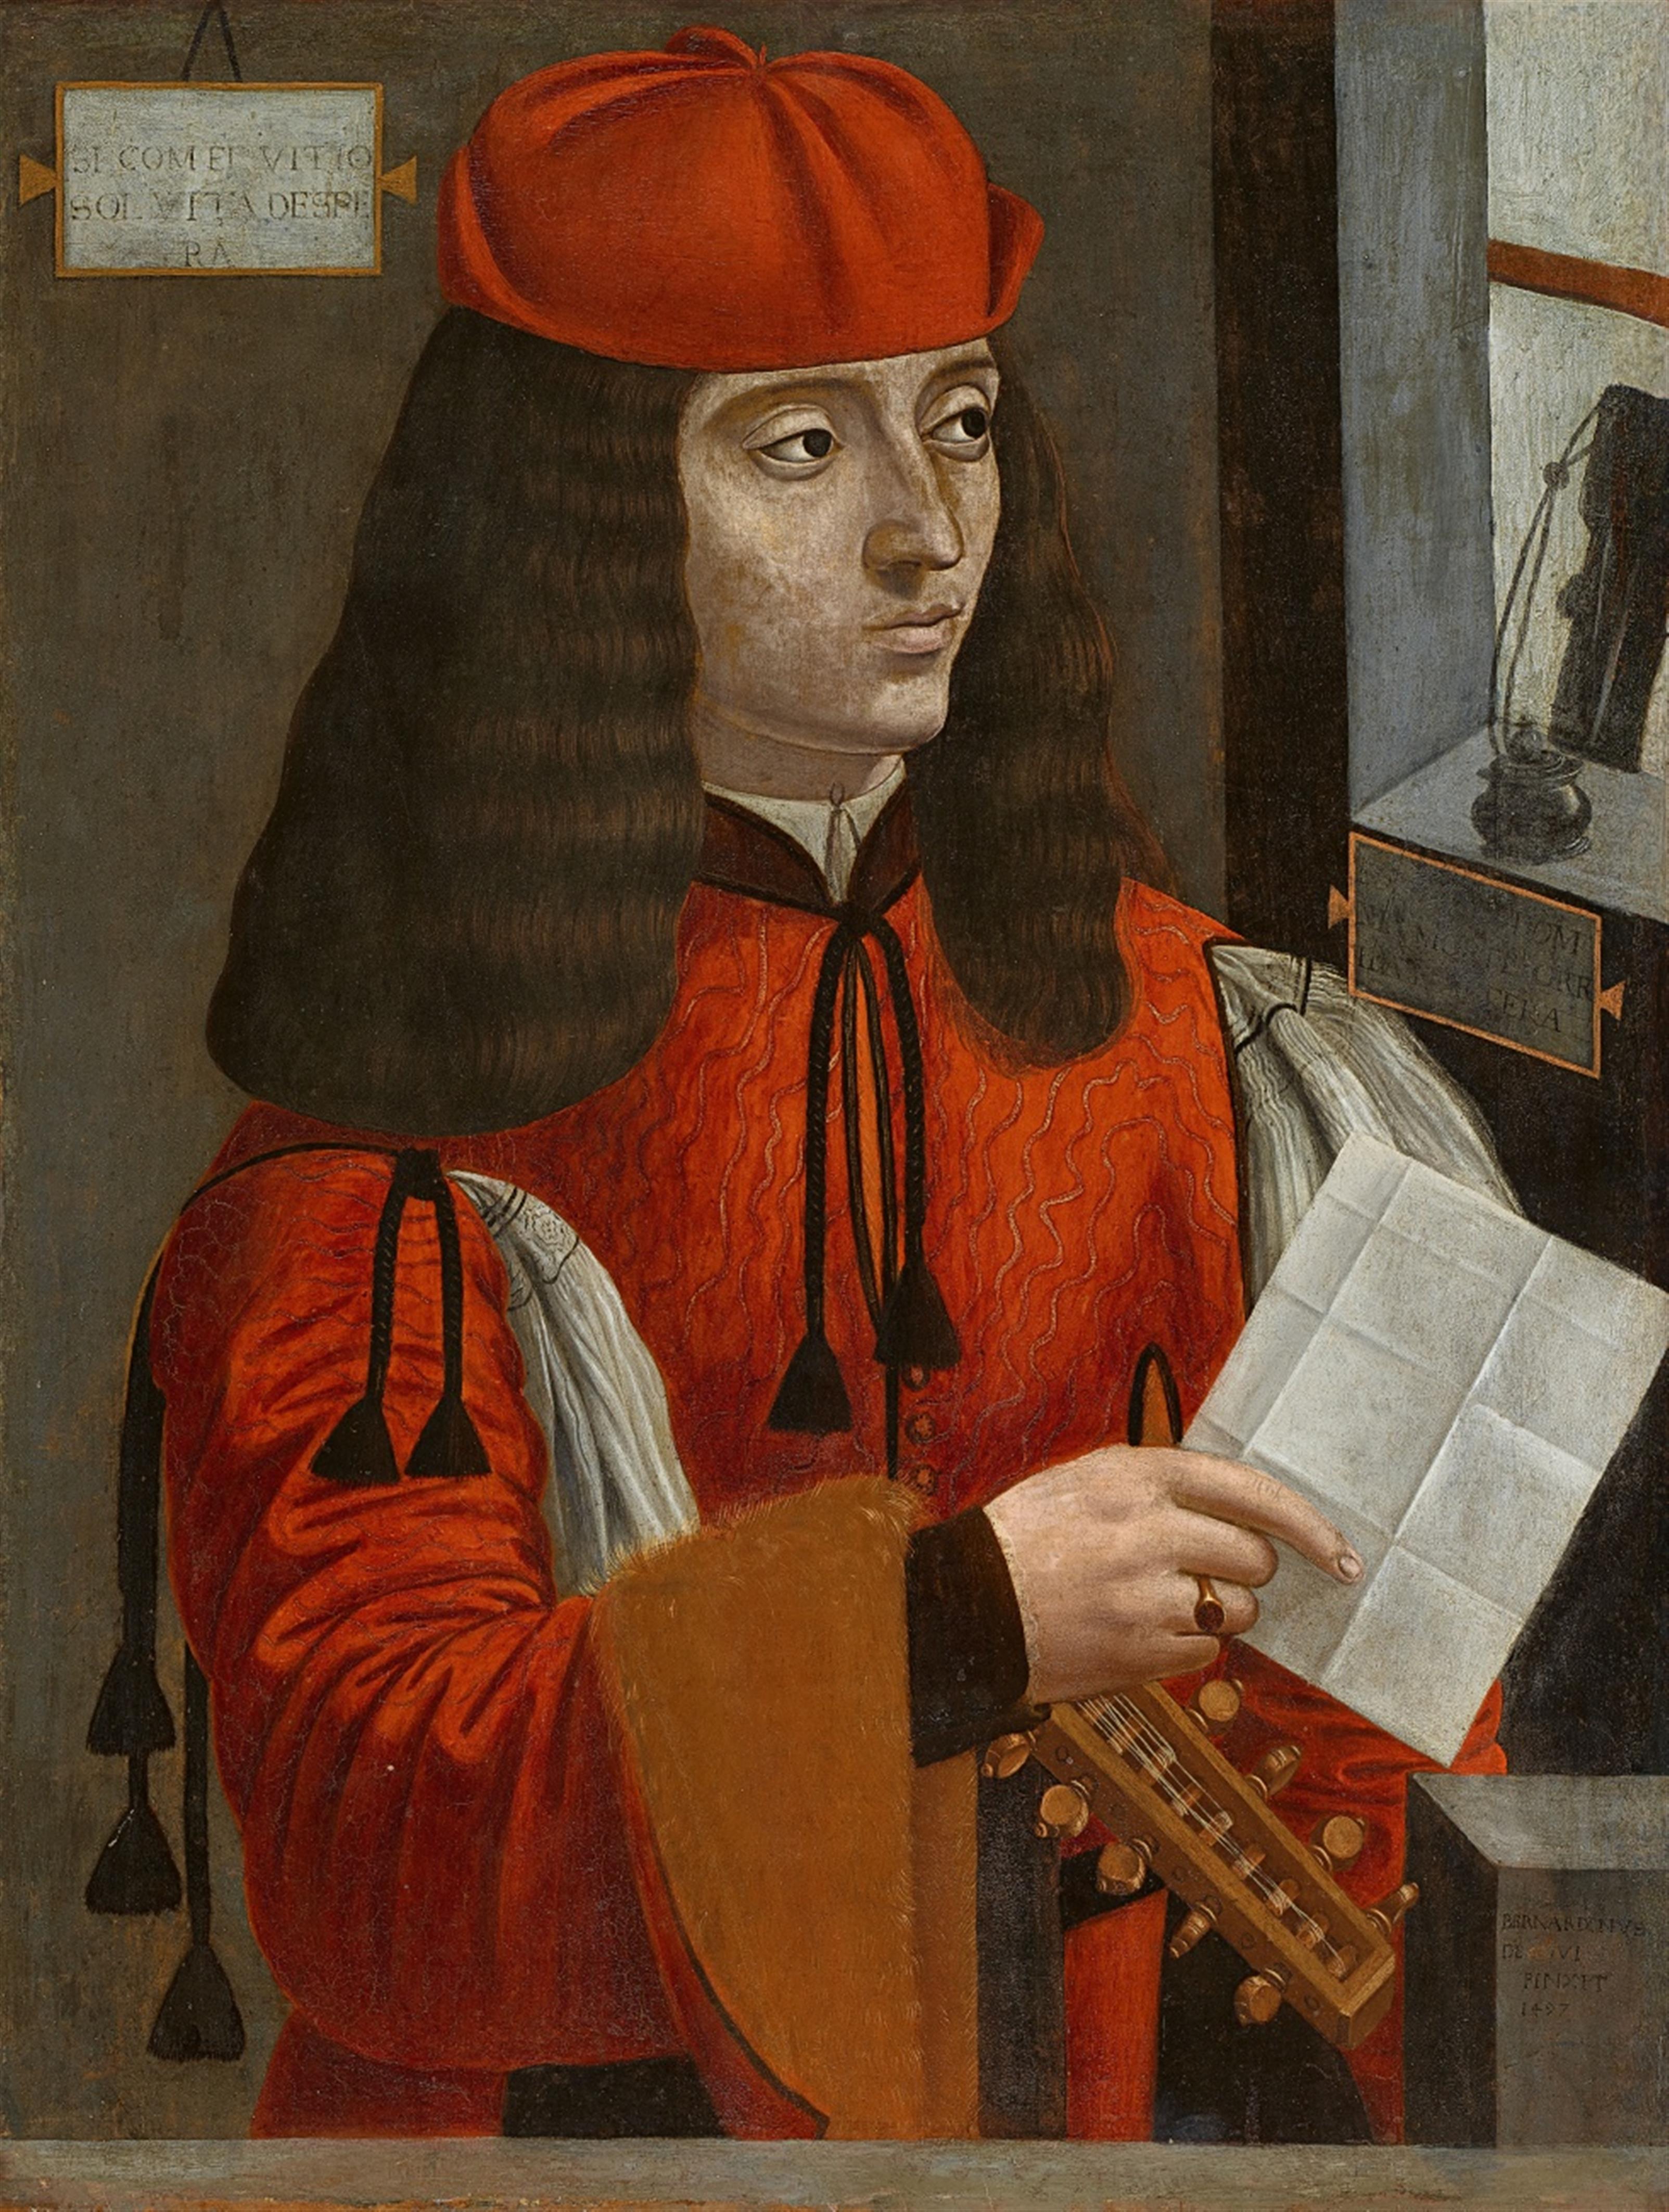 Авторы ренессанса. Доменико да Пьяченца. Бернардино де'Конти. Доменико да Пьяченца портрет. Бернардино де Конти (1450–1525).